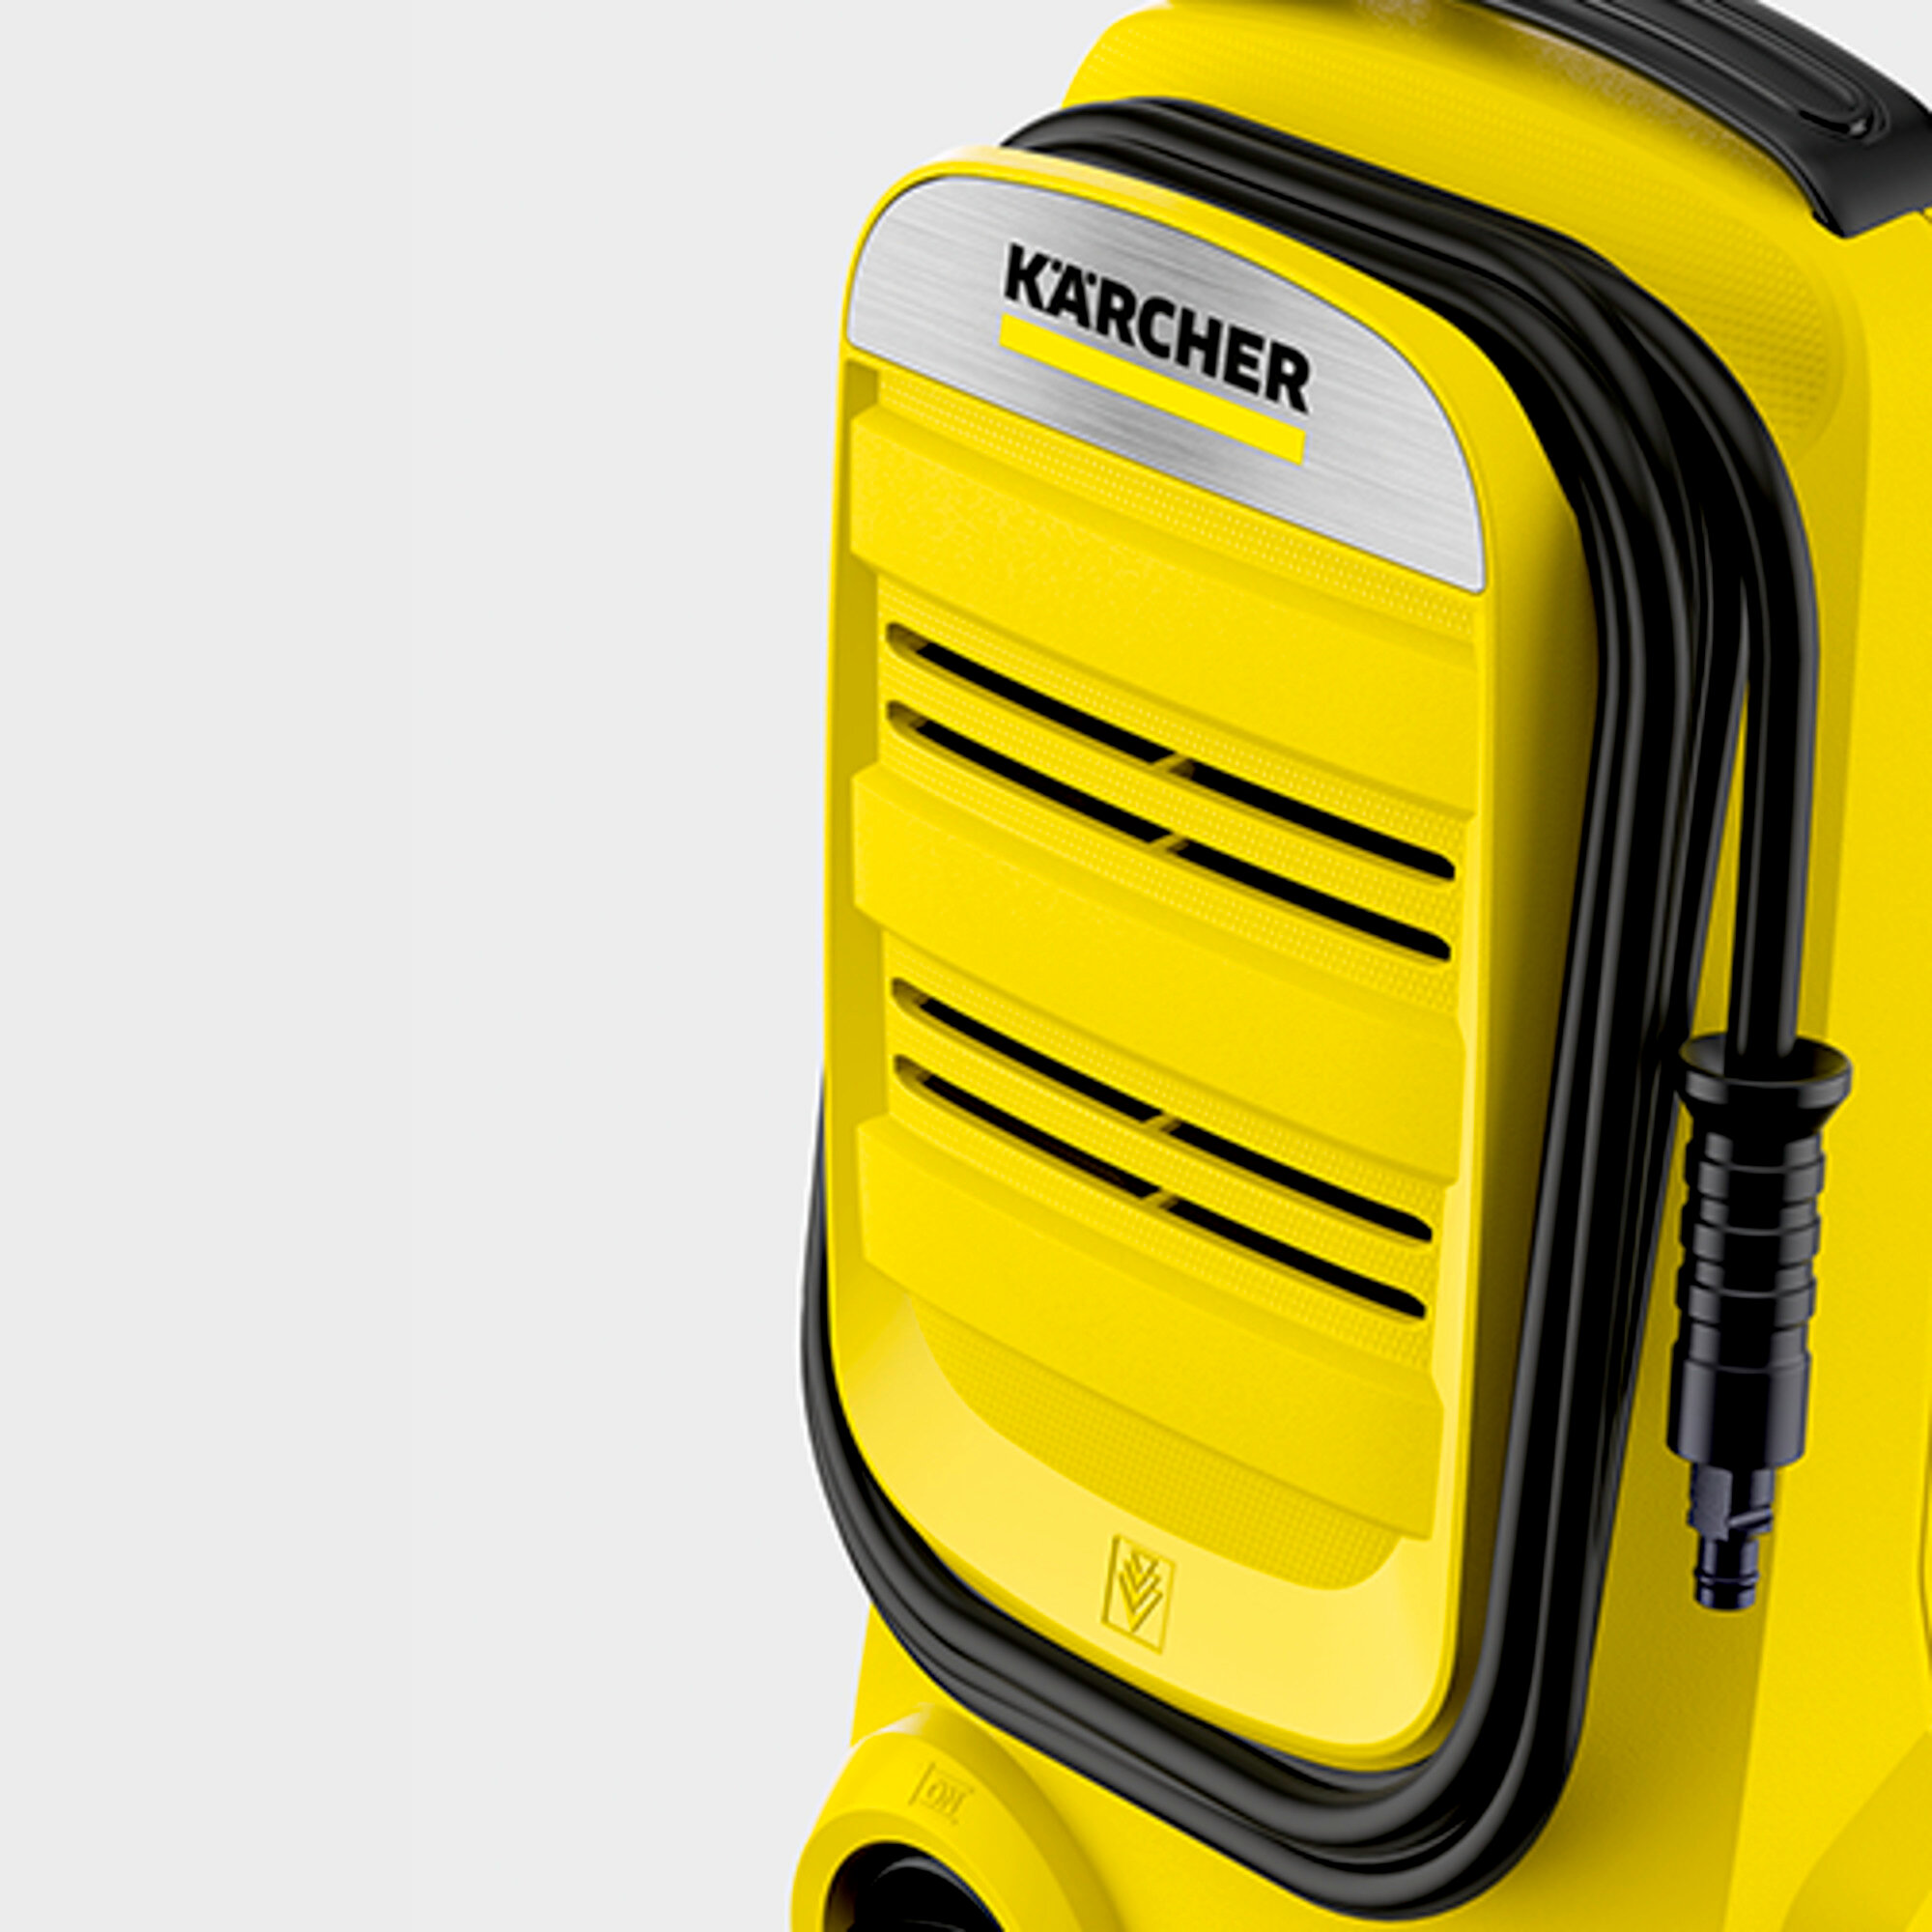 Myjka wysokociśnieniowa K 2 firmy Karcher: Komfort i porządek